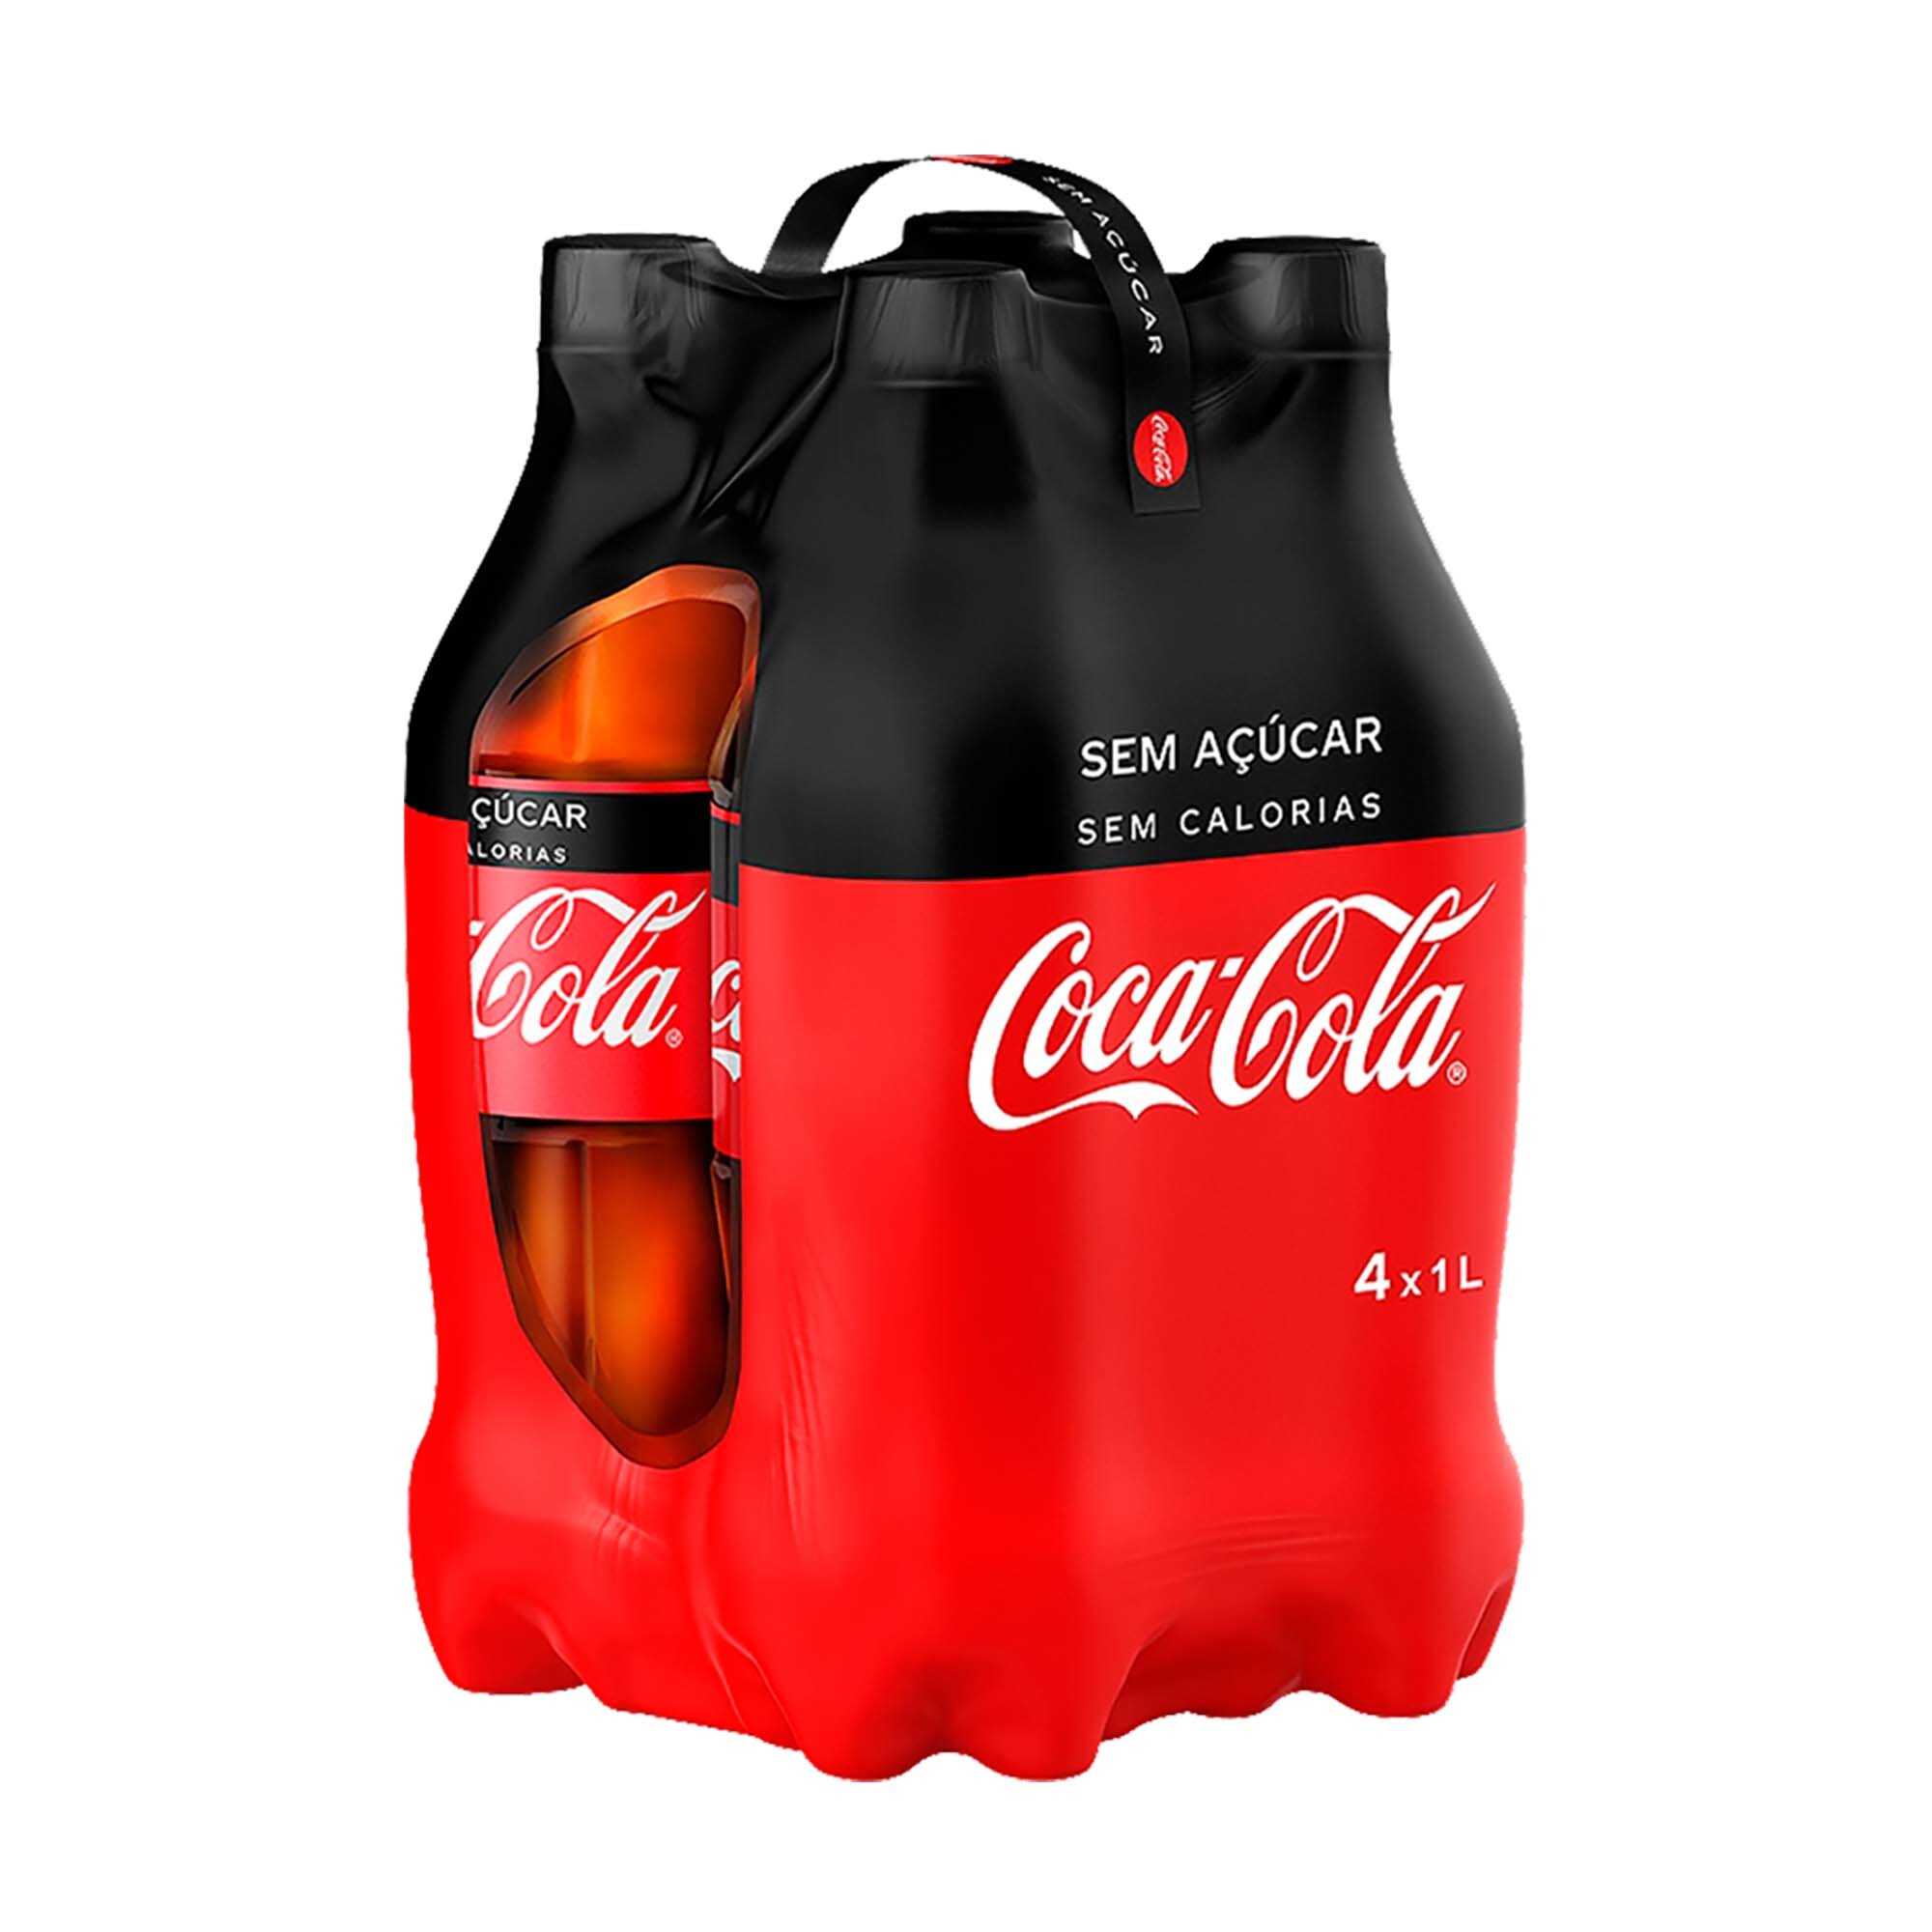 Mercadão - SolMar Açores: Refrigerante com Gás Zero Açúcar Coca Cola